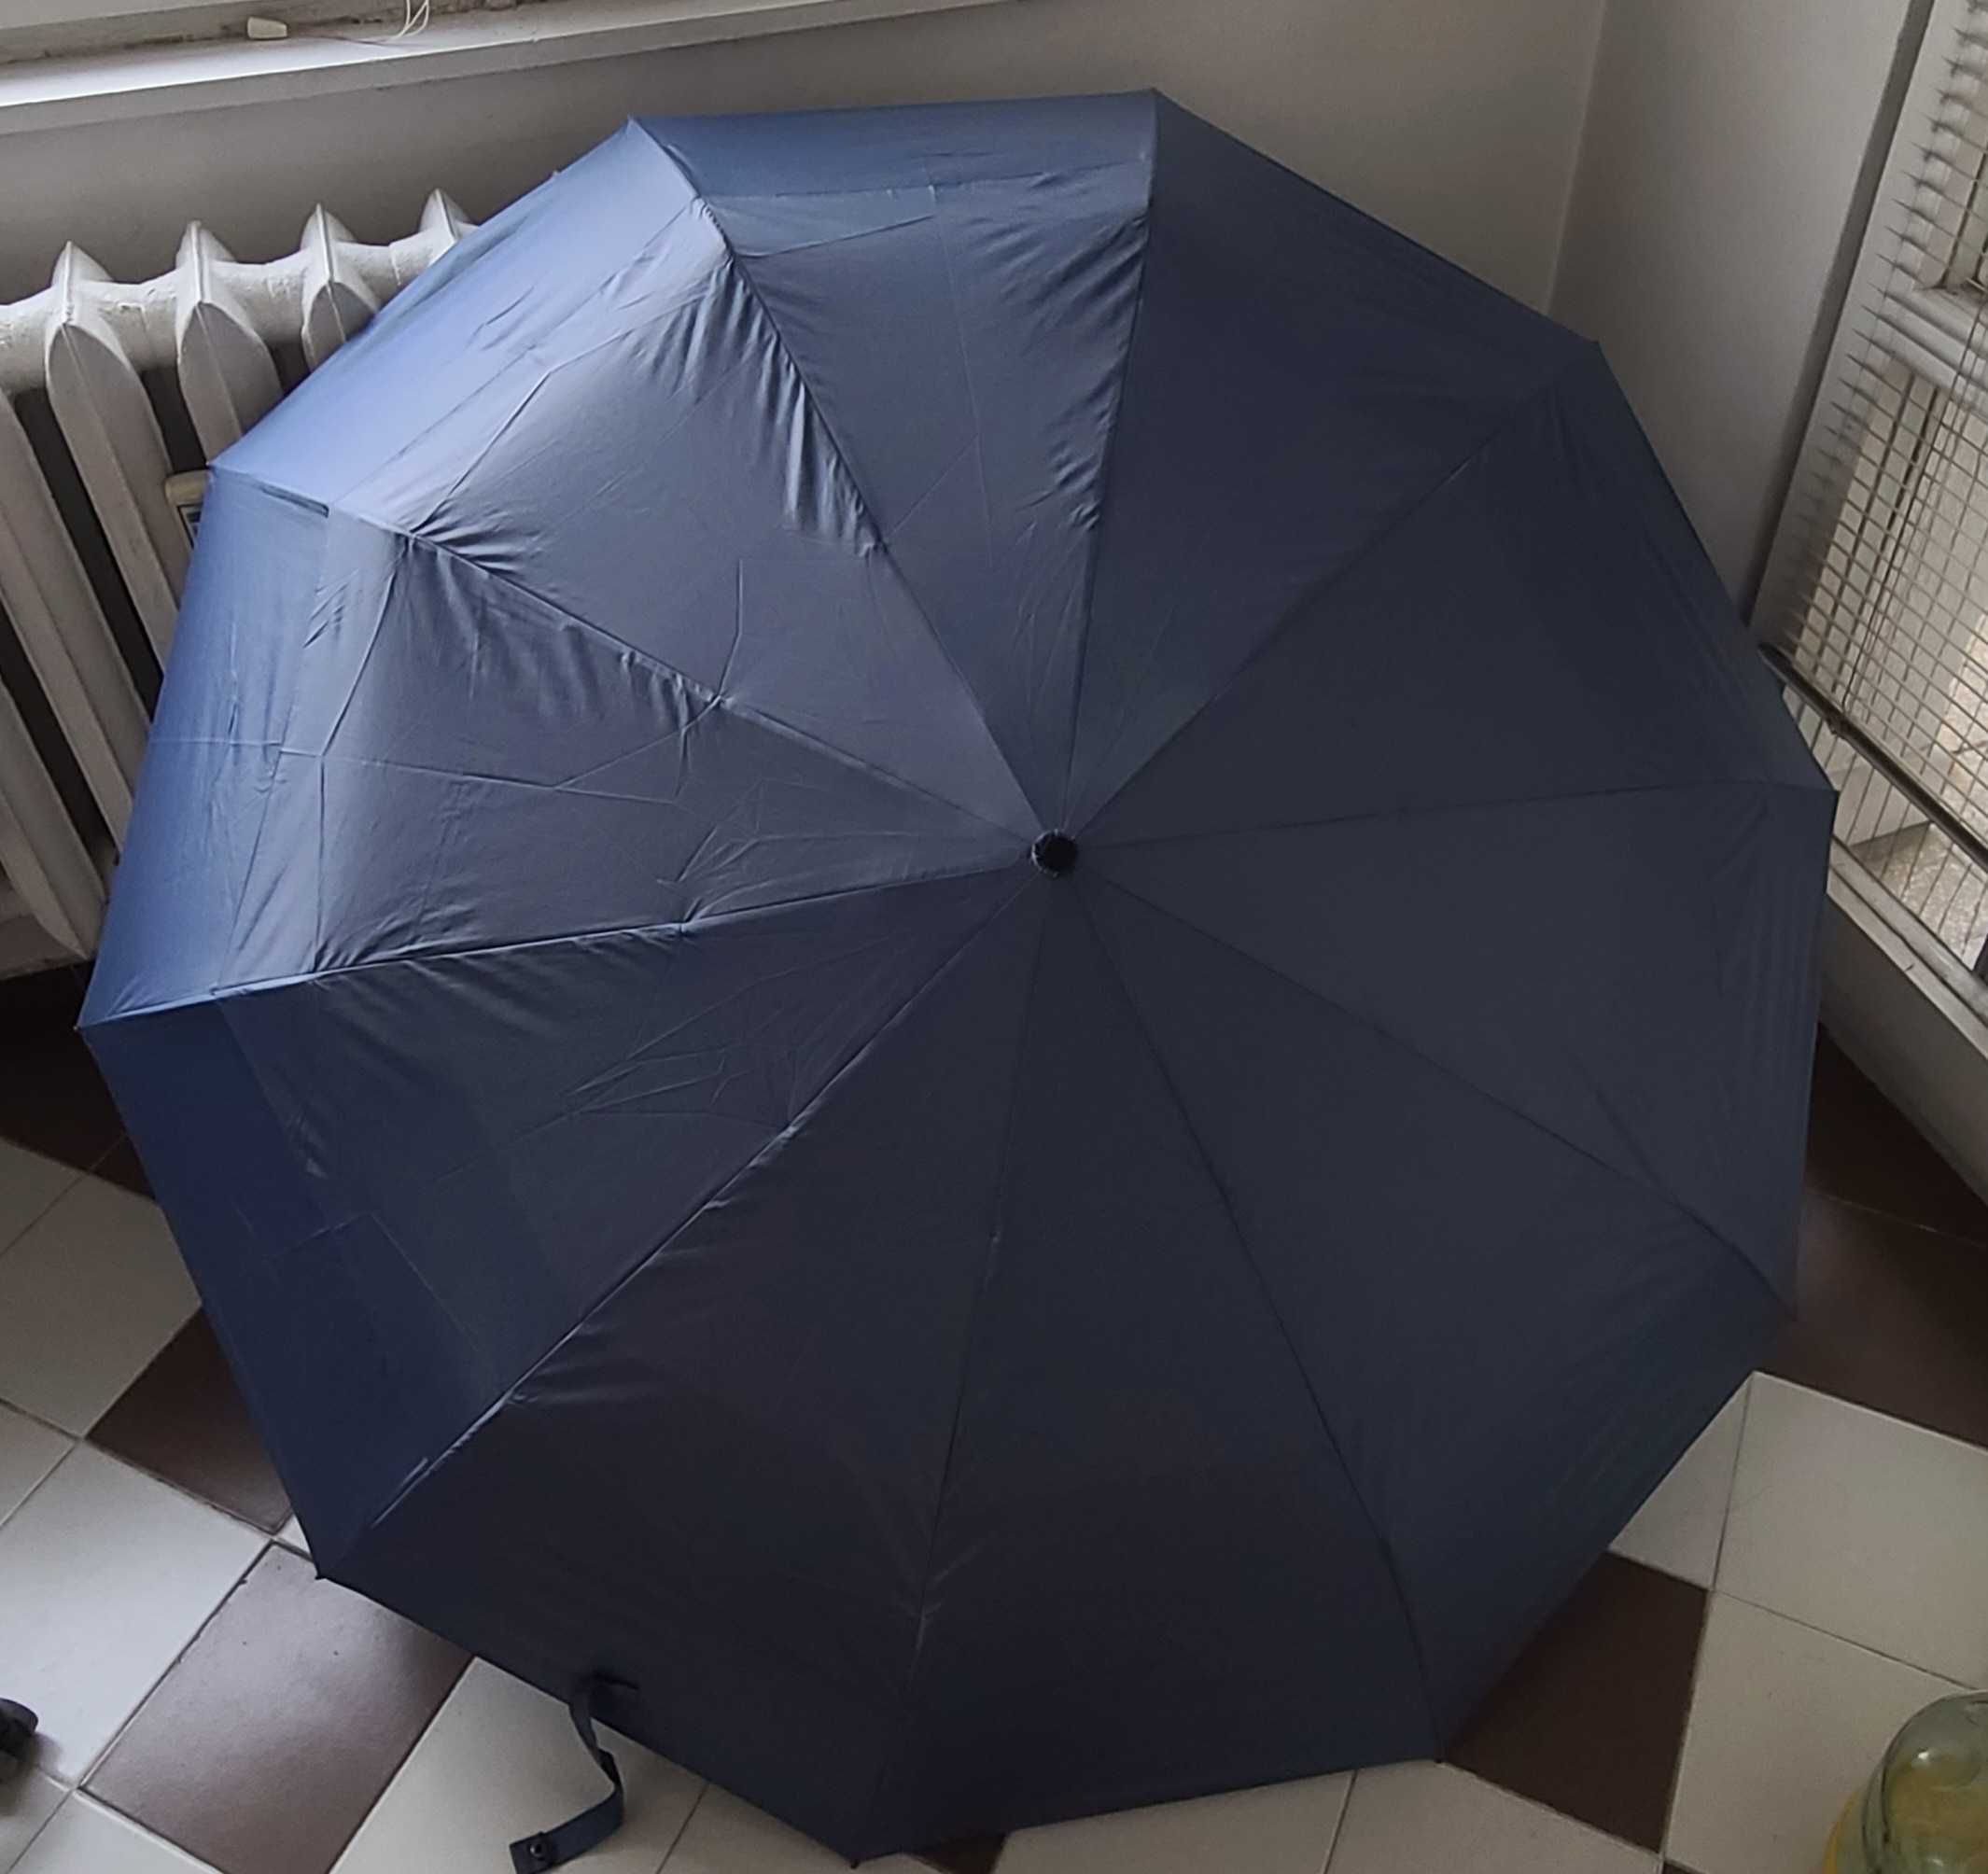 Автоматичен мъжки чадър за двама 130см диаметър